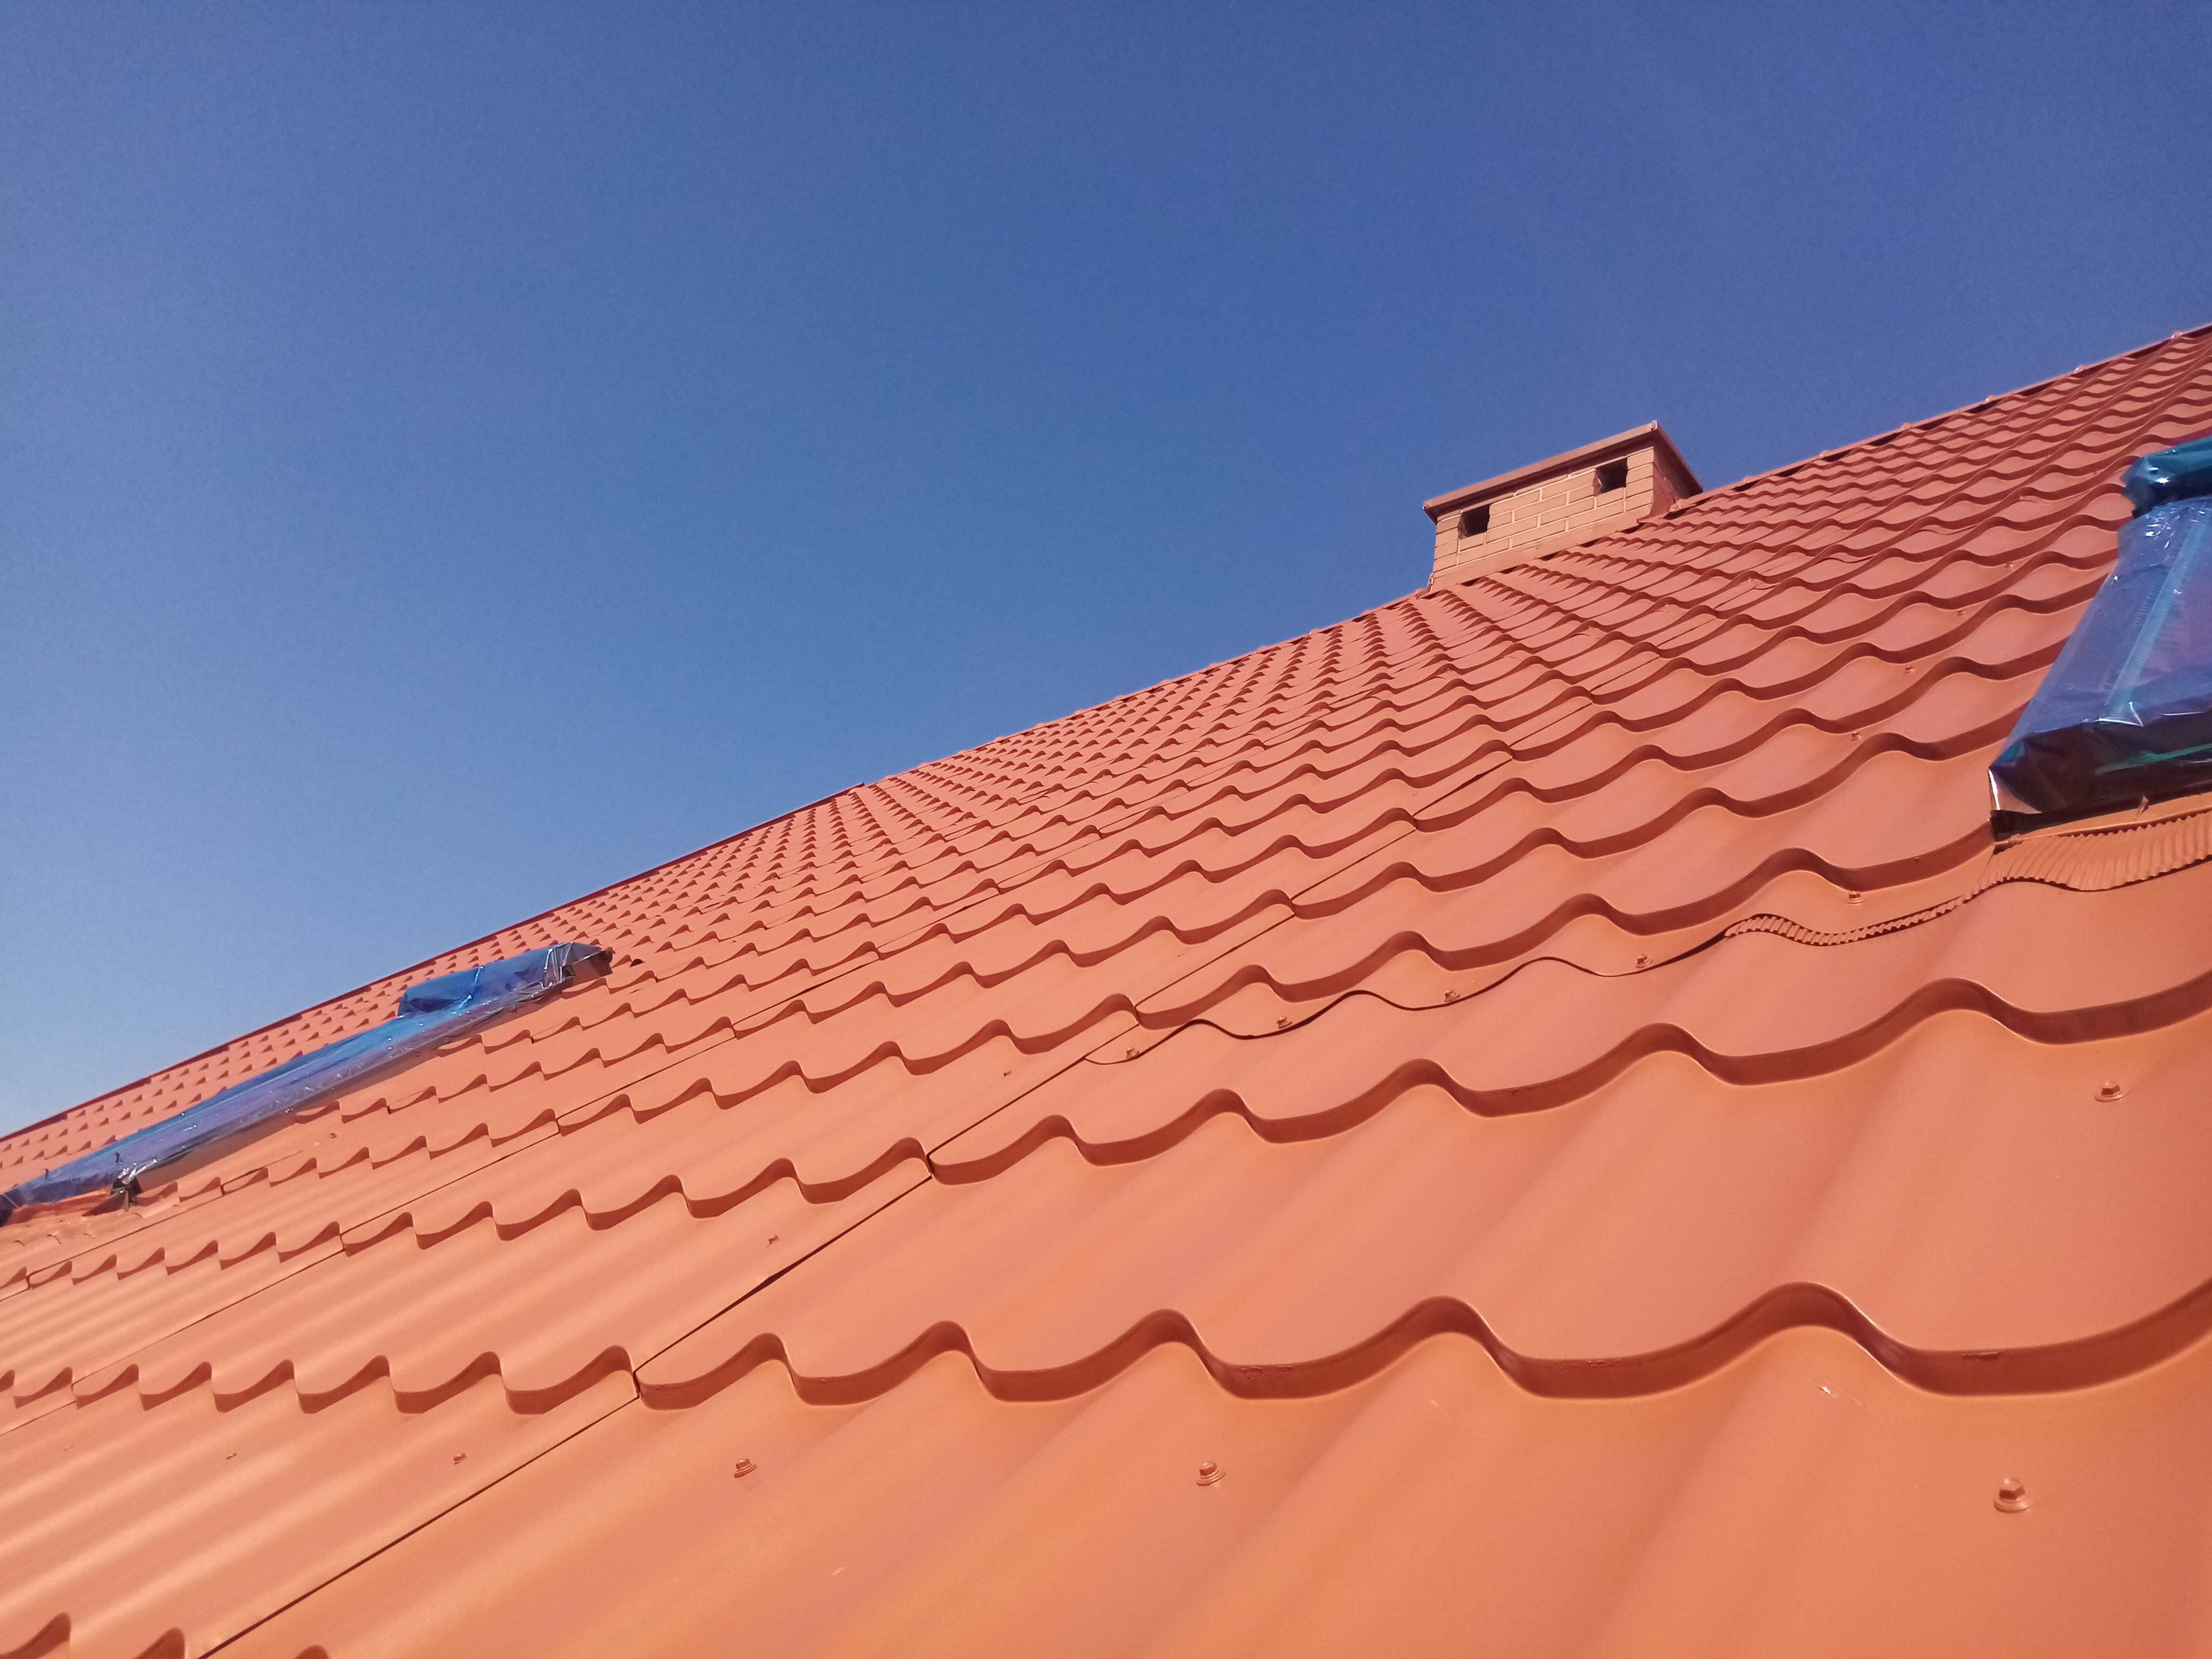 Malowanie Naprawy Mycie Dachów - Usługi dekarskie Czyszczenie rynien